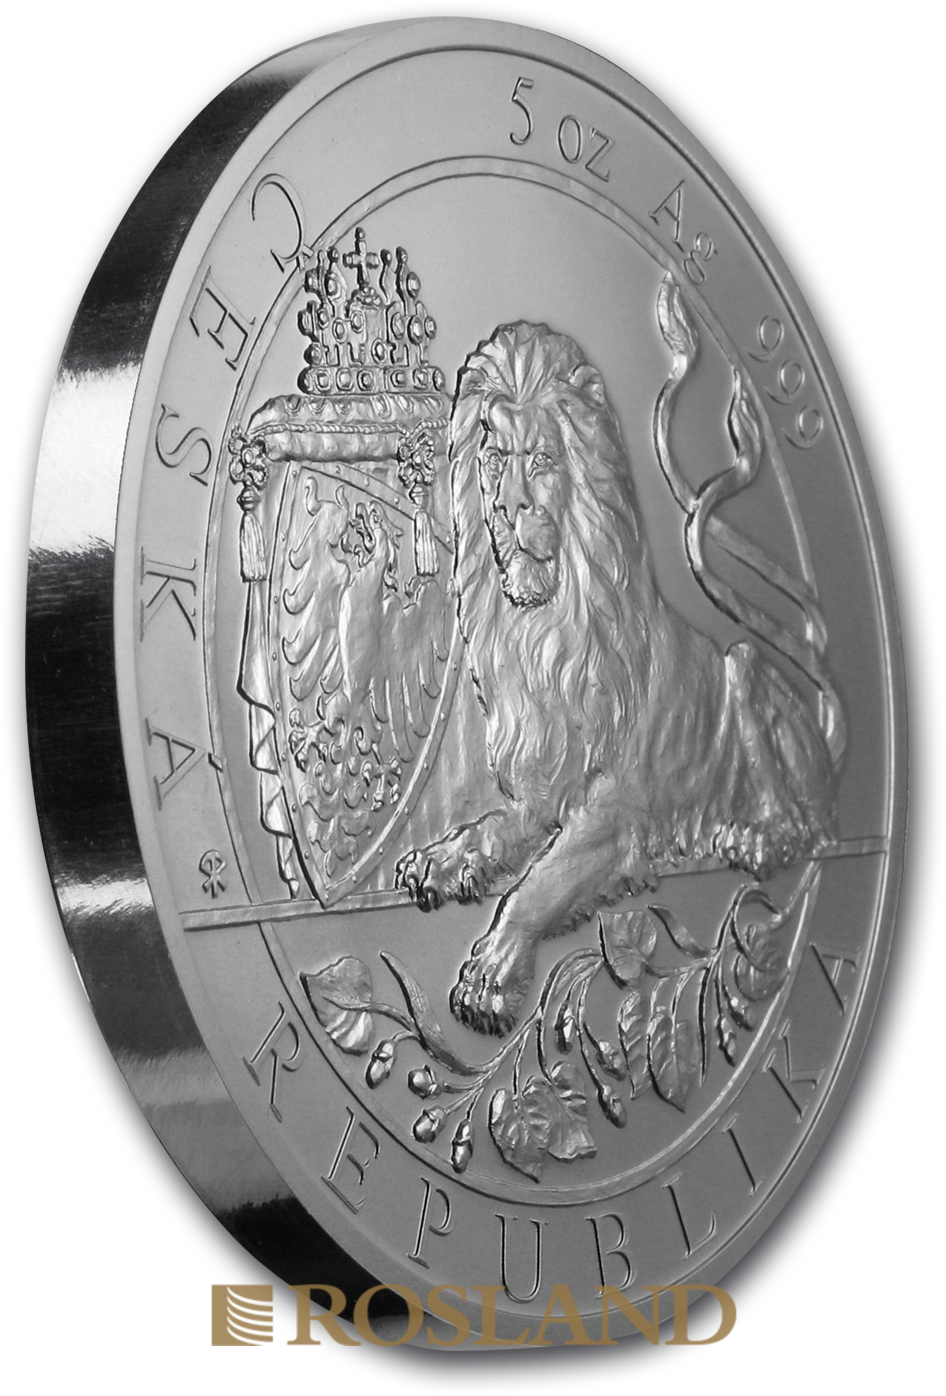 5 Unzen Silbermünze Tschechischer Löwe 2019